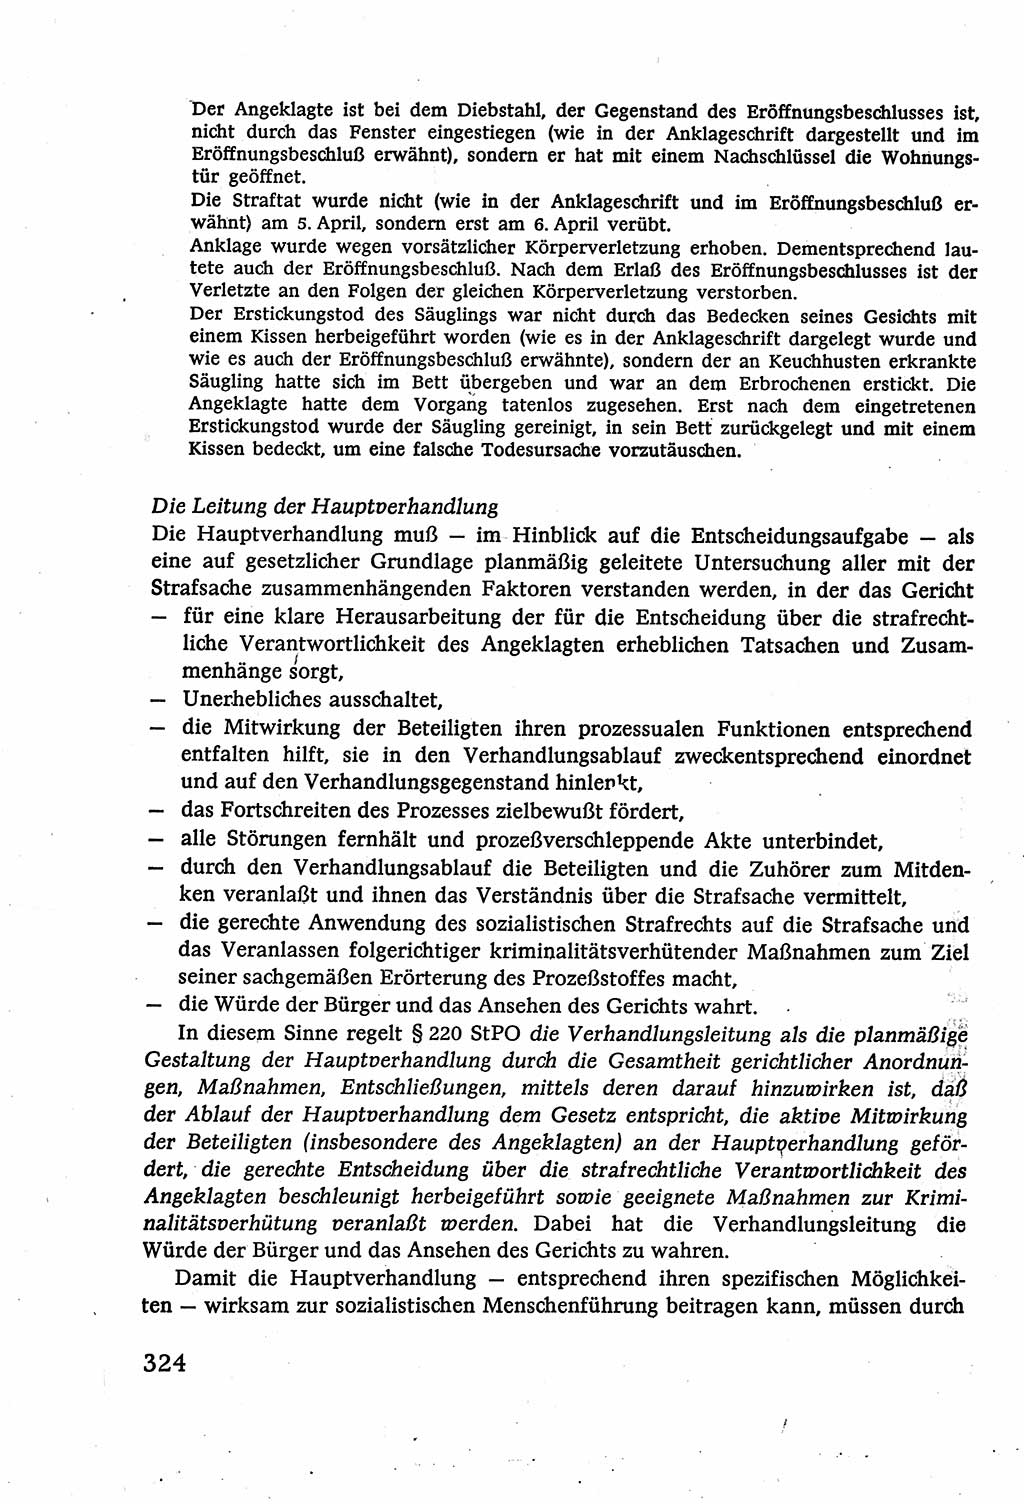 Strafverfahrensrecht [Deutsche Demokratische Republik (DDR)], Lehrbuch 1977, Seite 324 (Strafverf.-R. DDR Lb. 1977, S. 324)